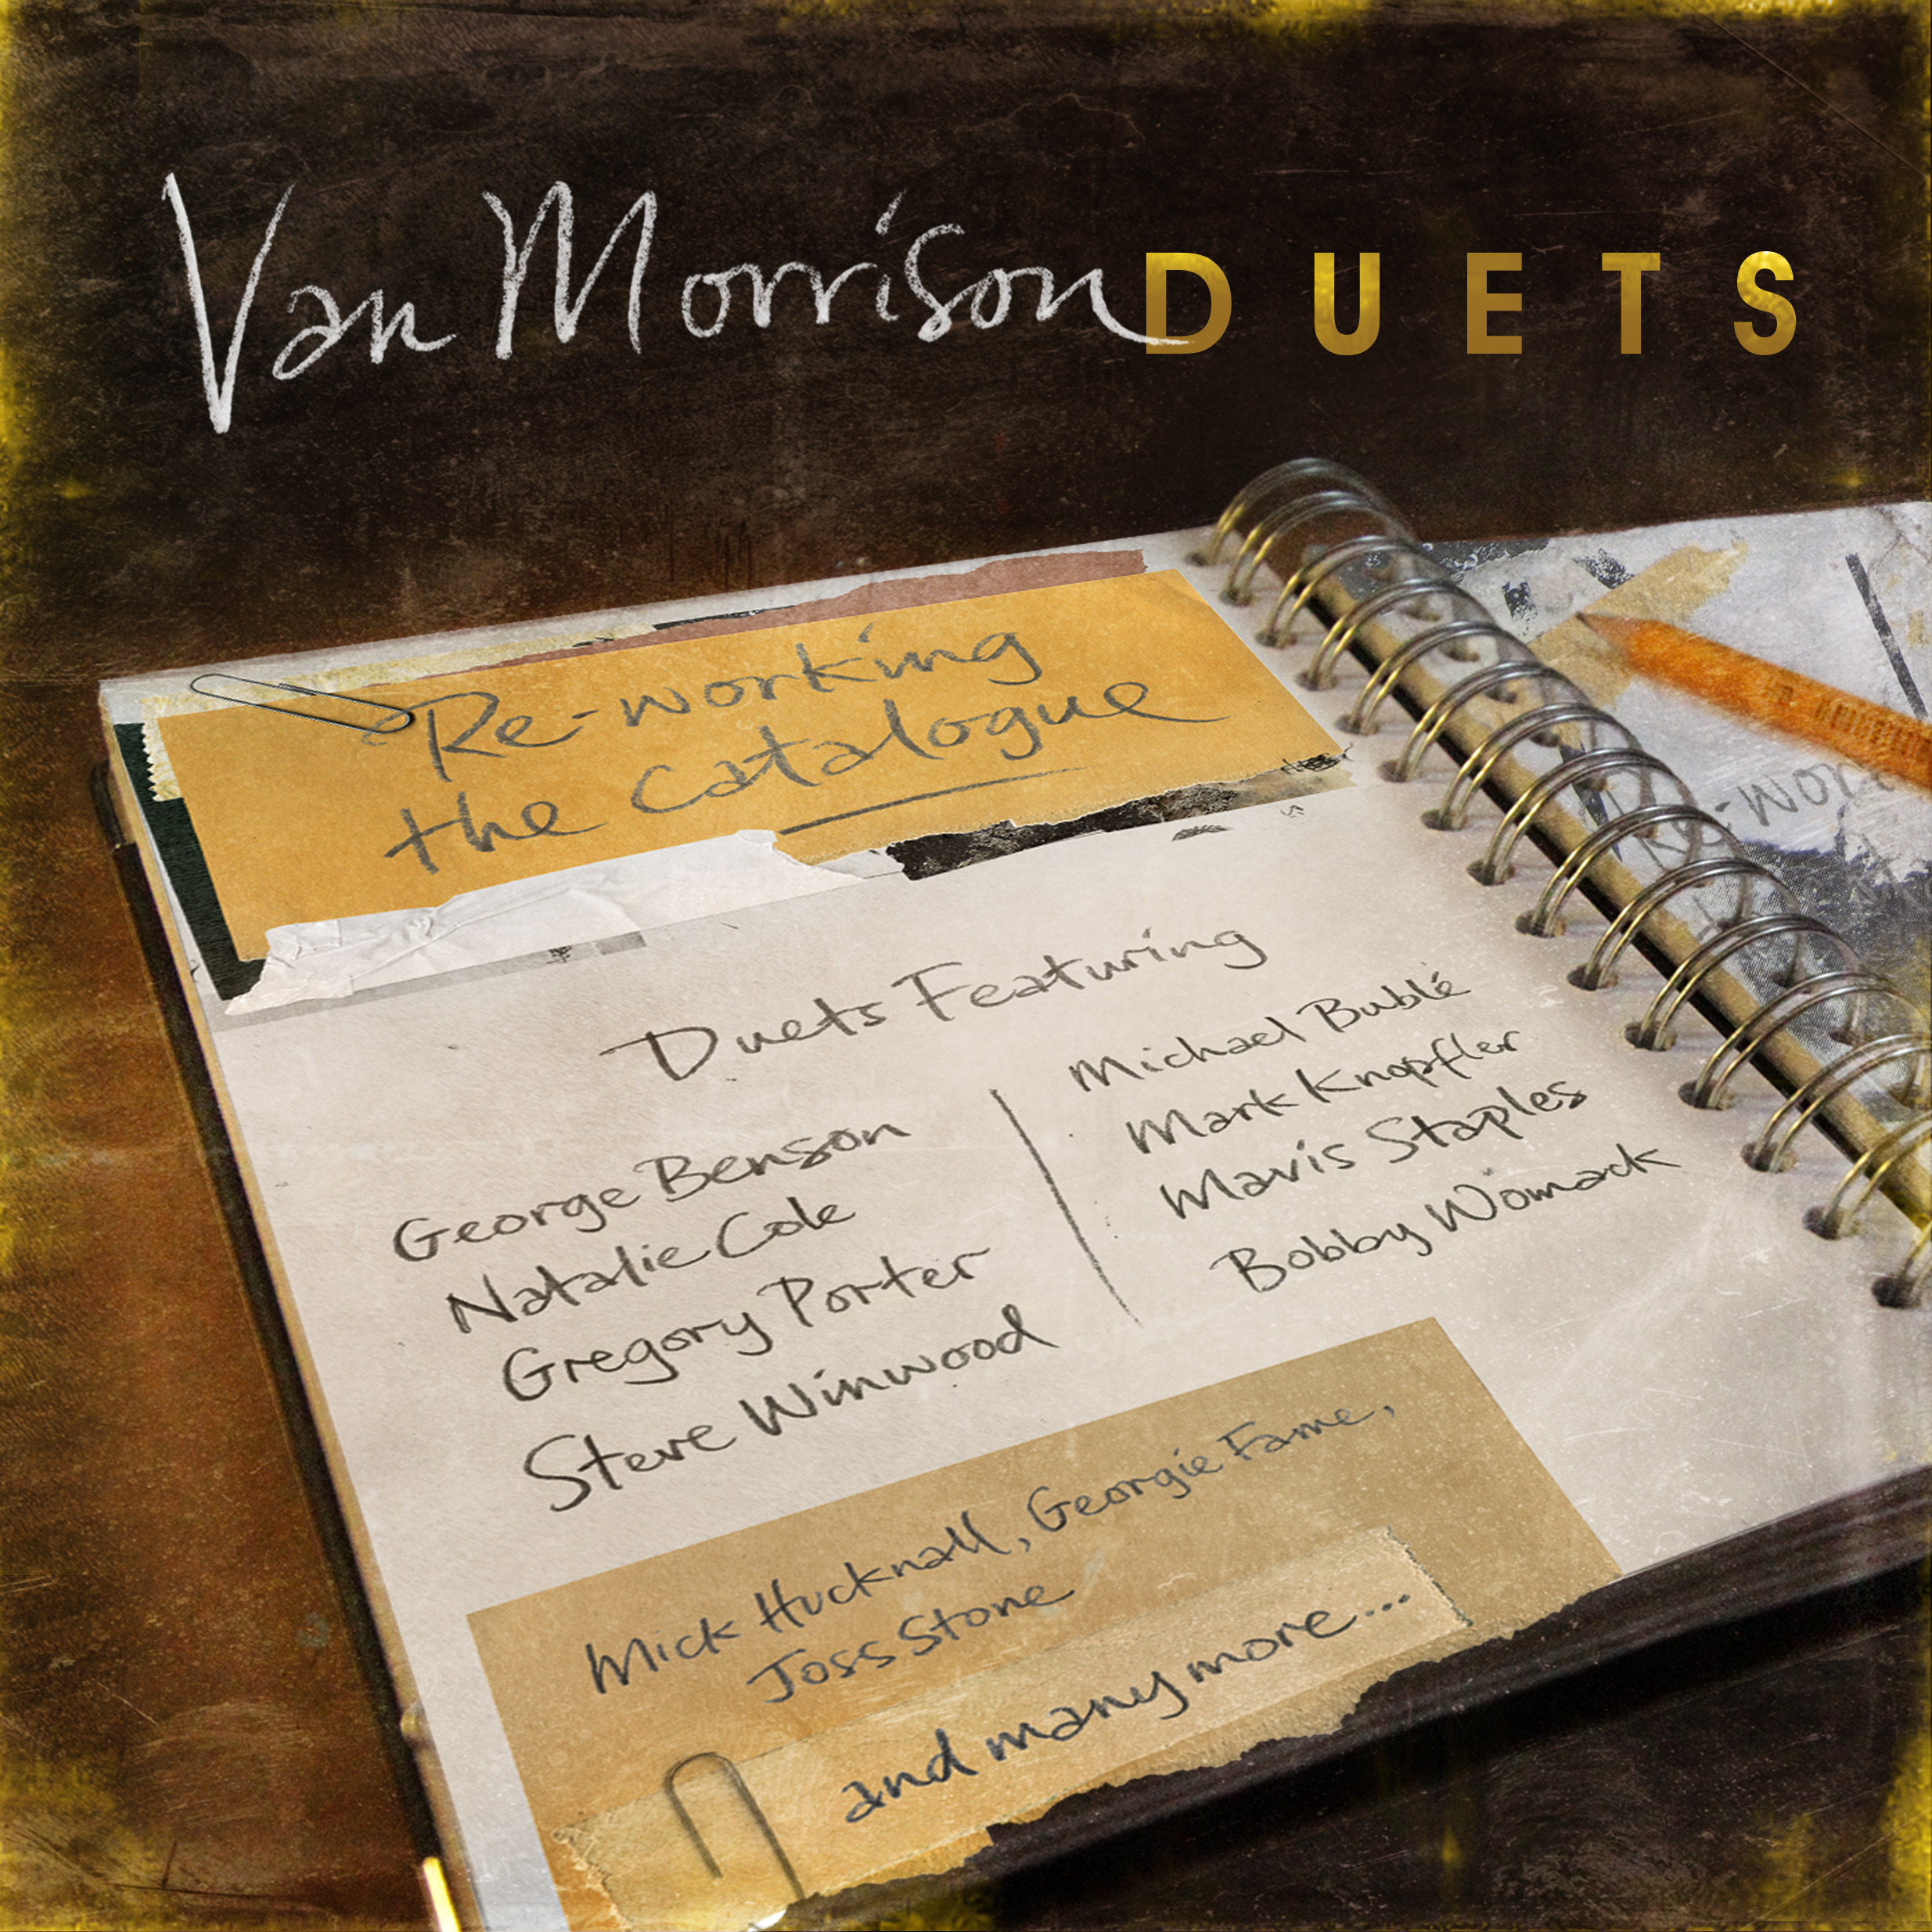 Van-Morrison-Duets_Rgb